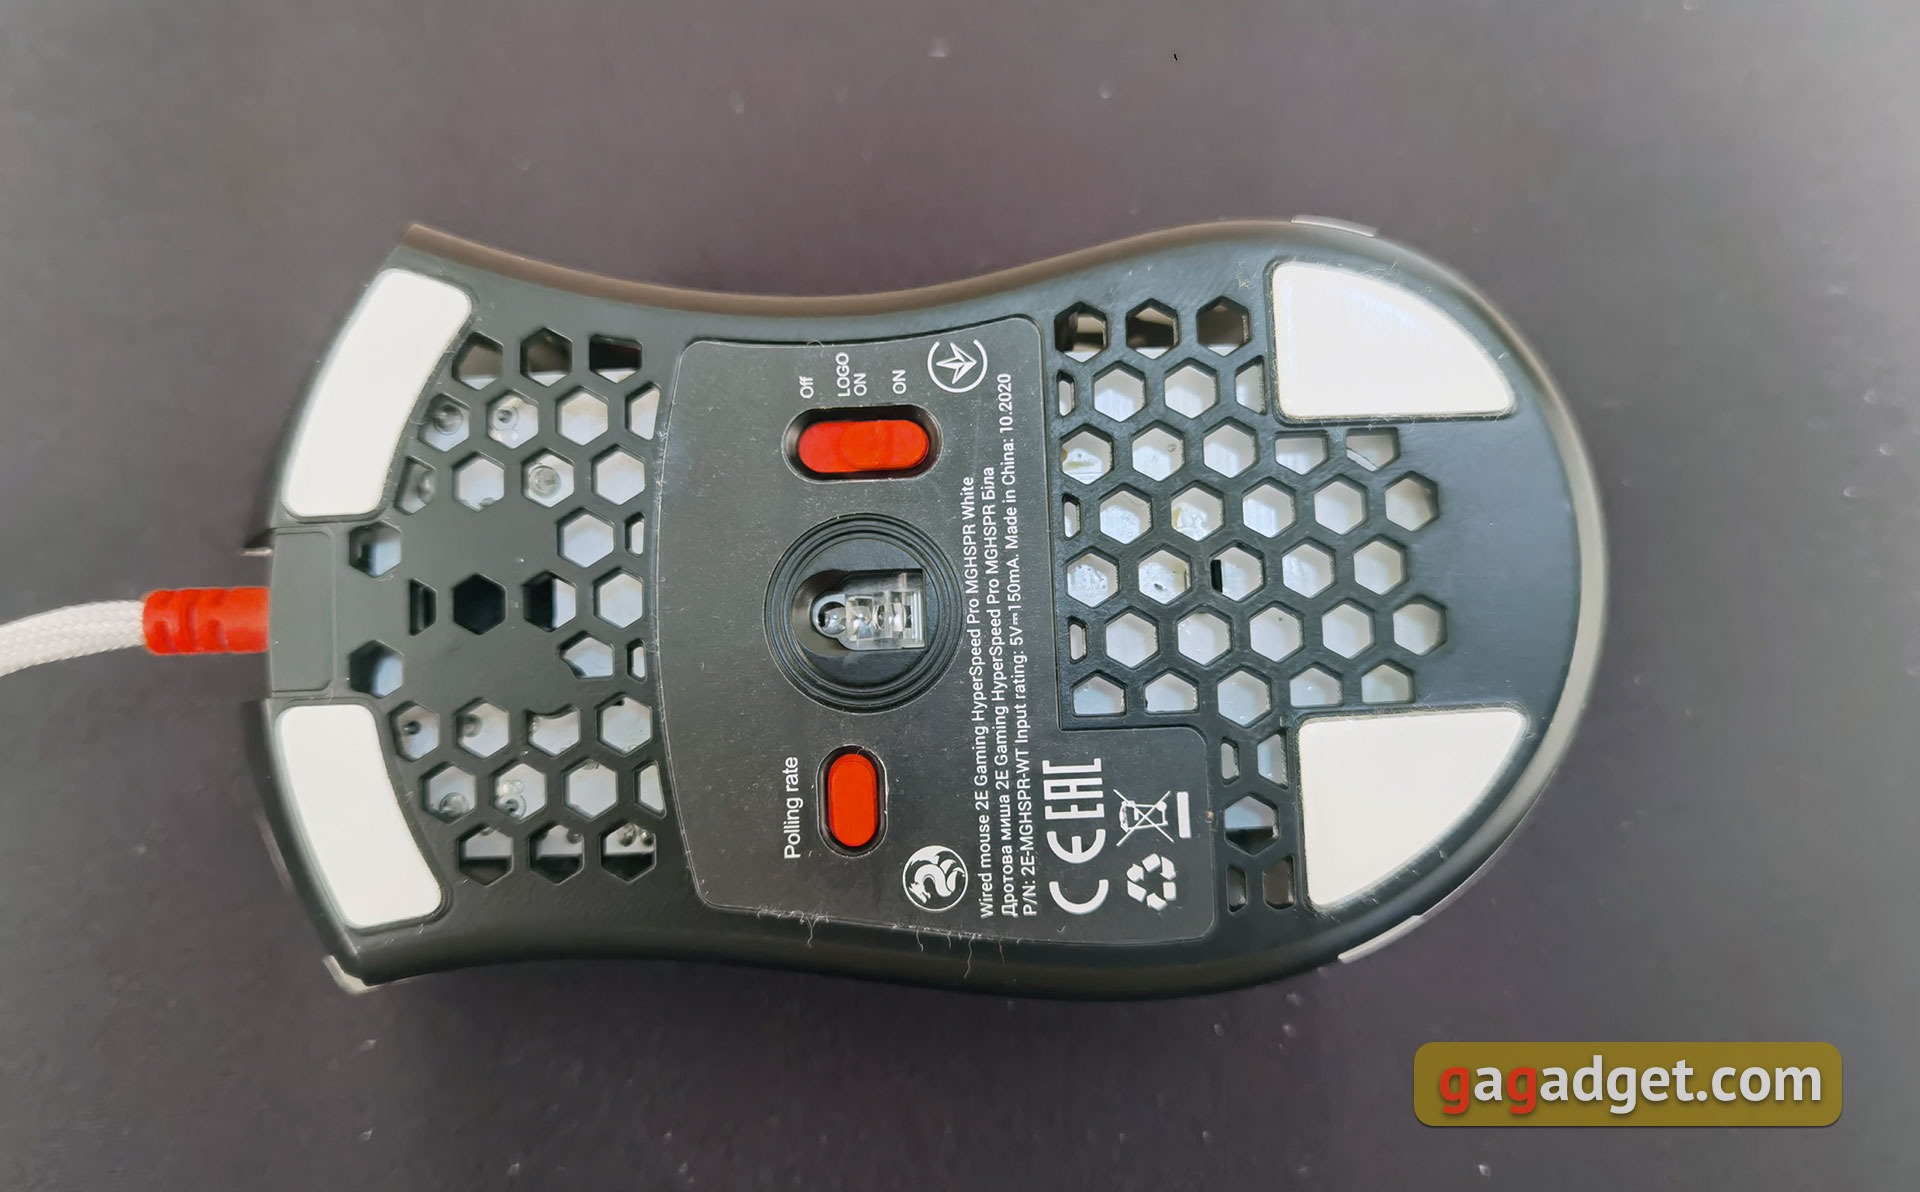 2E Gaming HyperSpeed Pro Überblick: Eine leichte Gaming-Maus mit einem großartigen Sensor-14